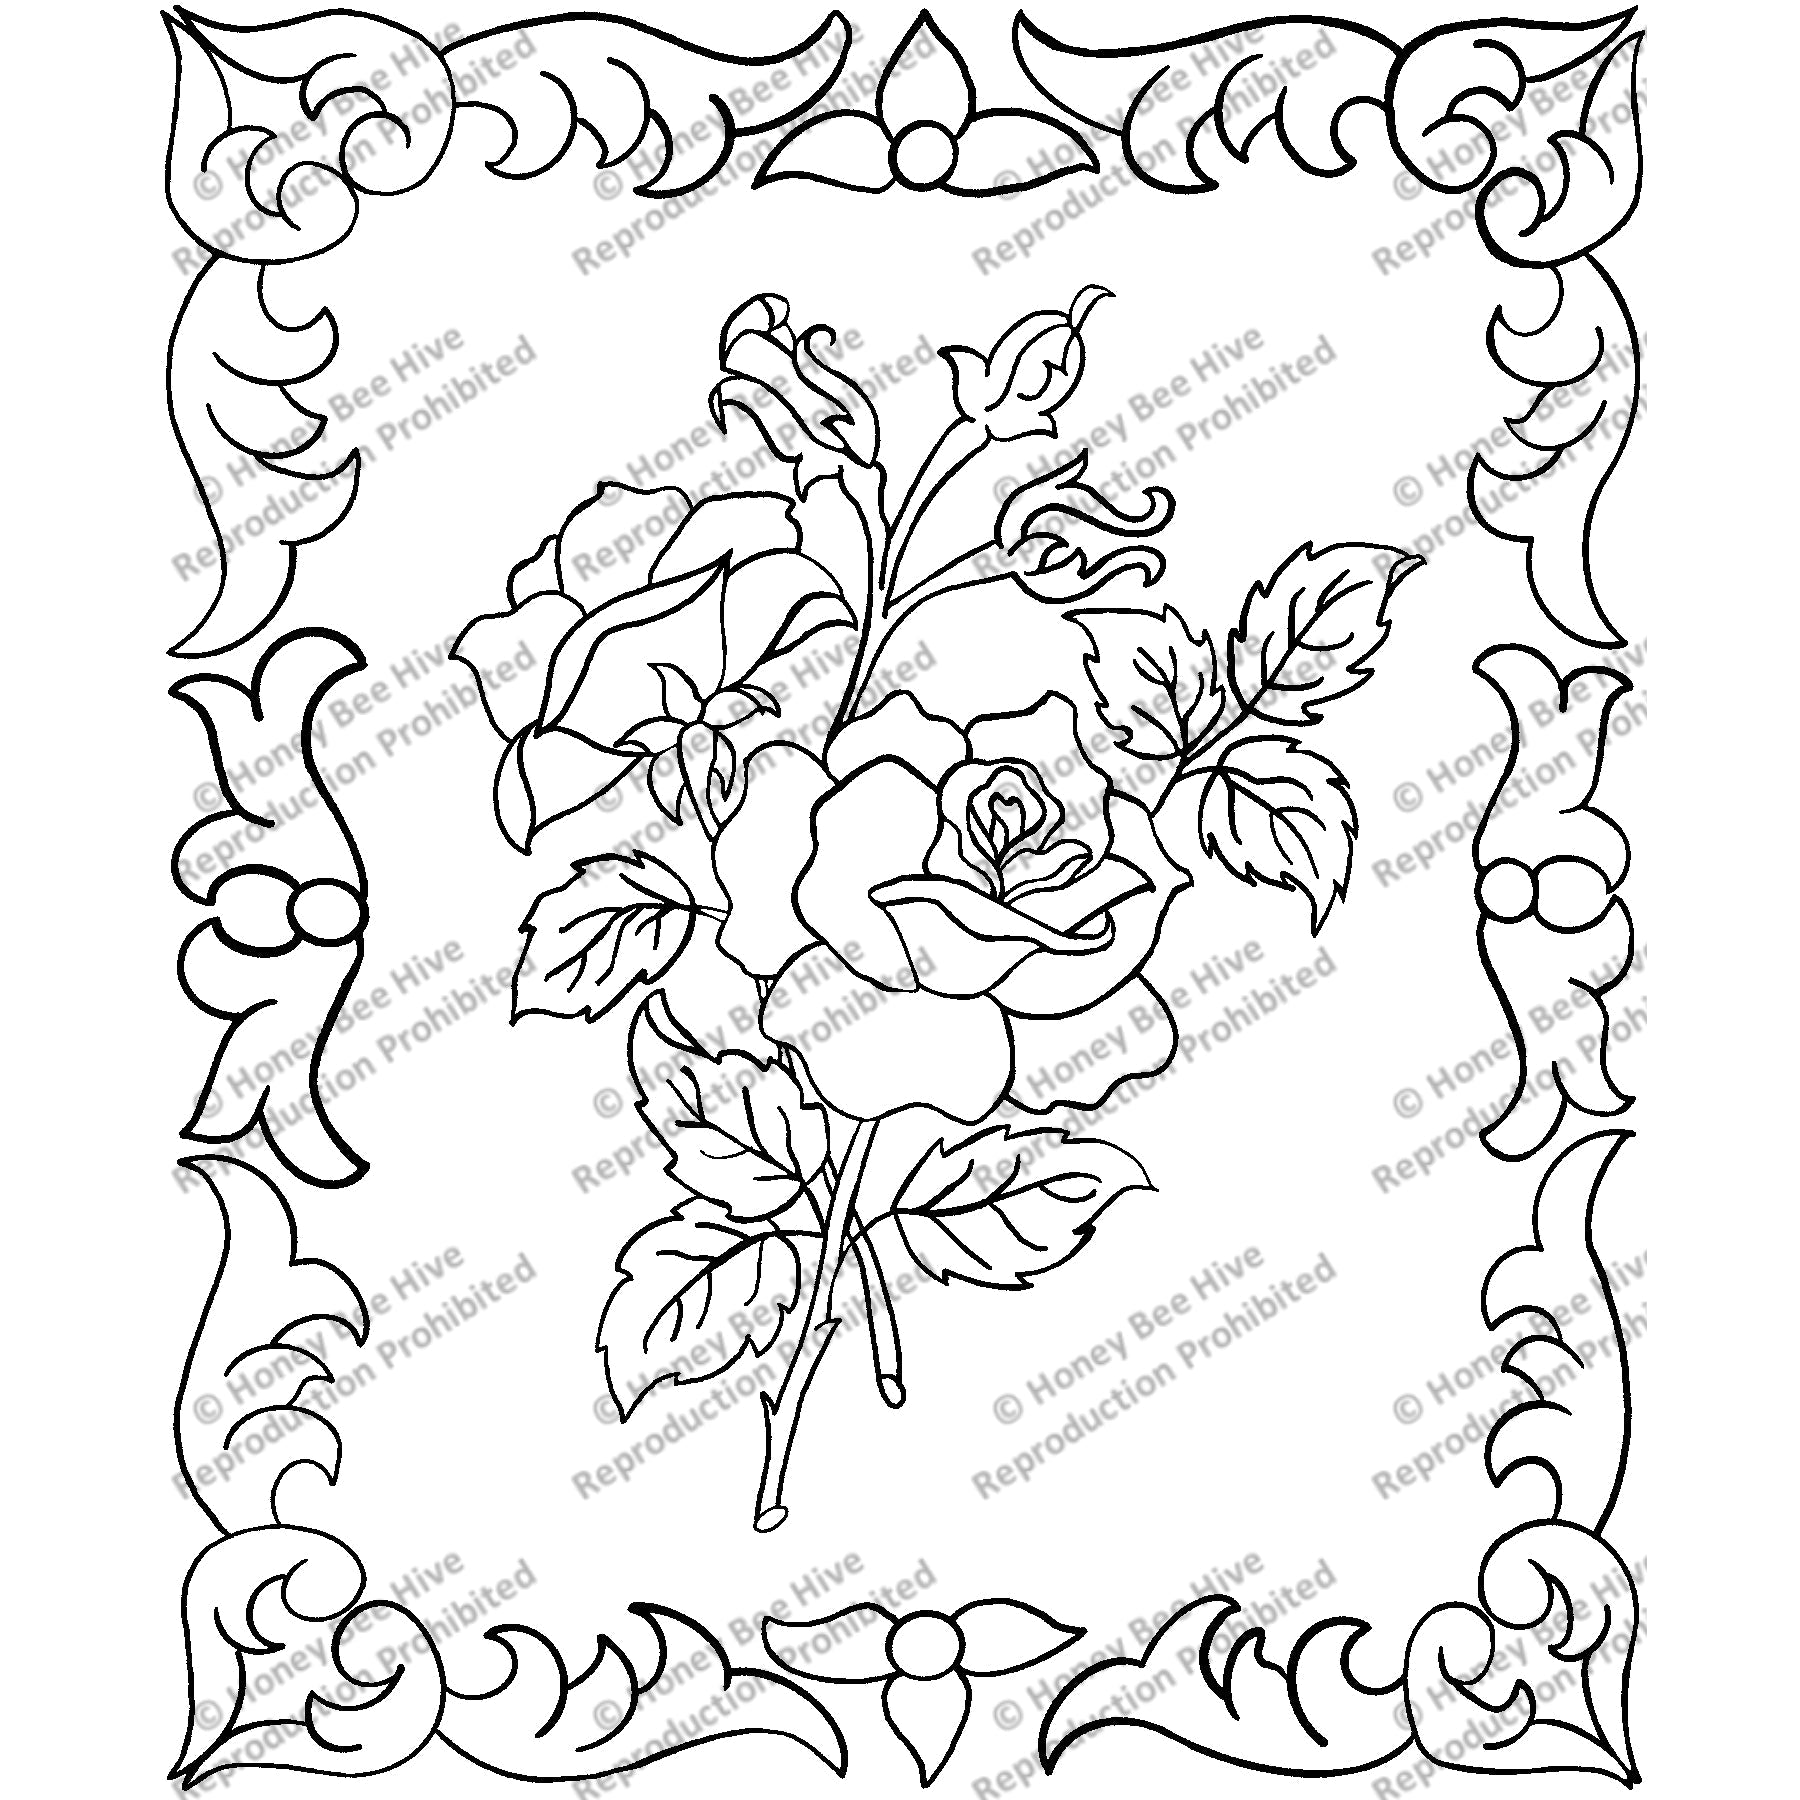 Gilded Rose, rug hooking pattern